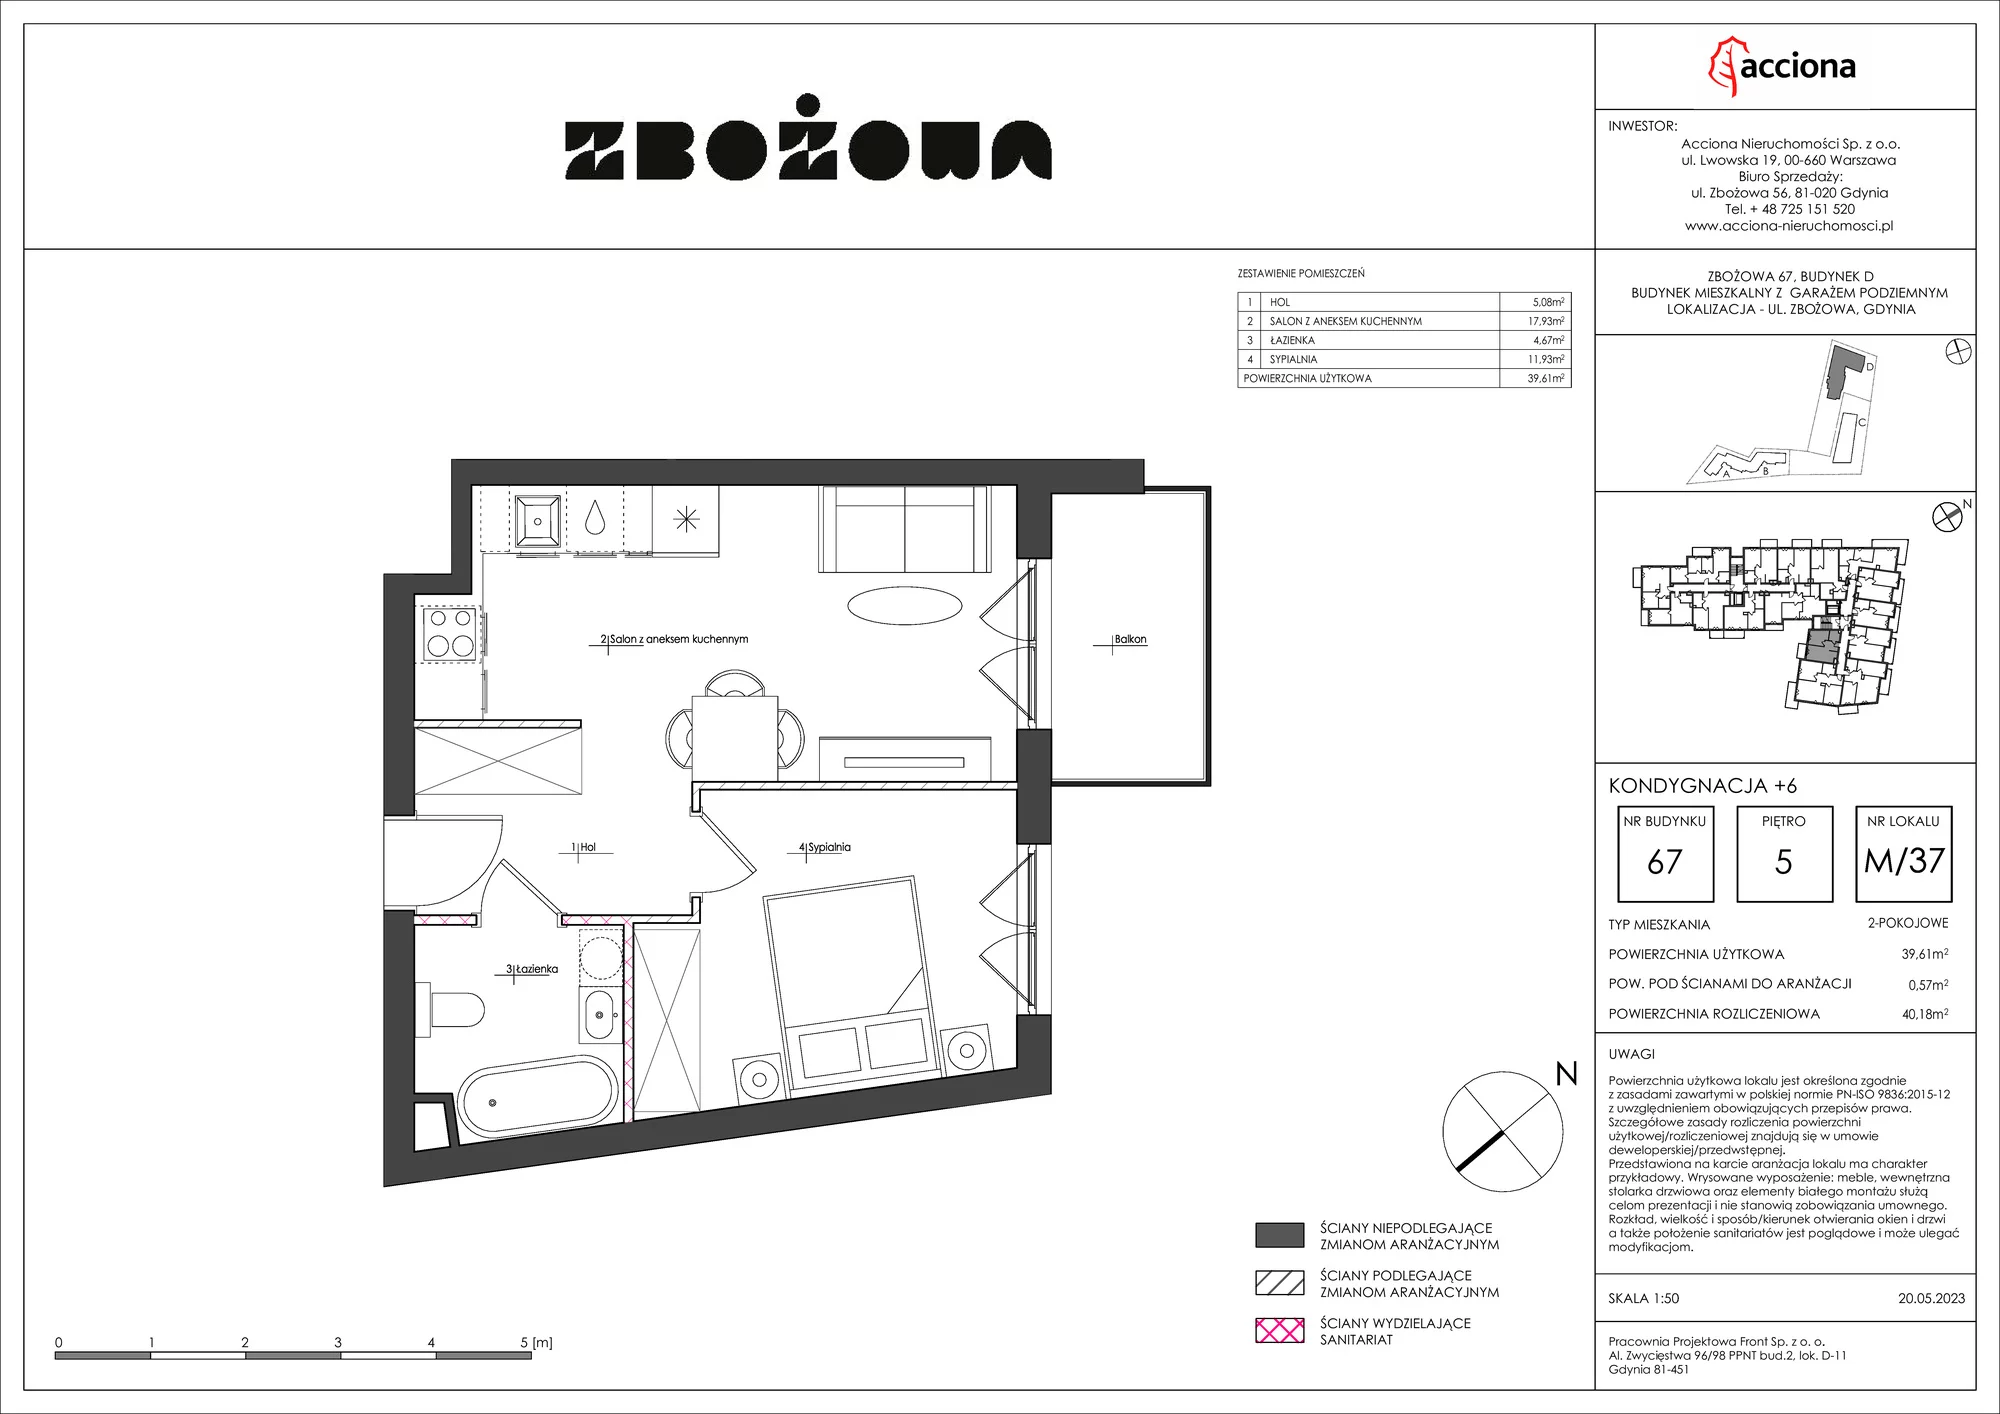 Mieszkanie 40,18 m², piętro 5, oferta nr 67.37, Zbożowa, Gdynia, Cisowa, ul. Zbożowa